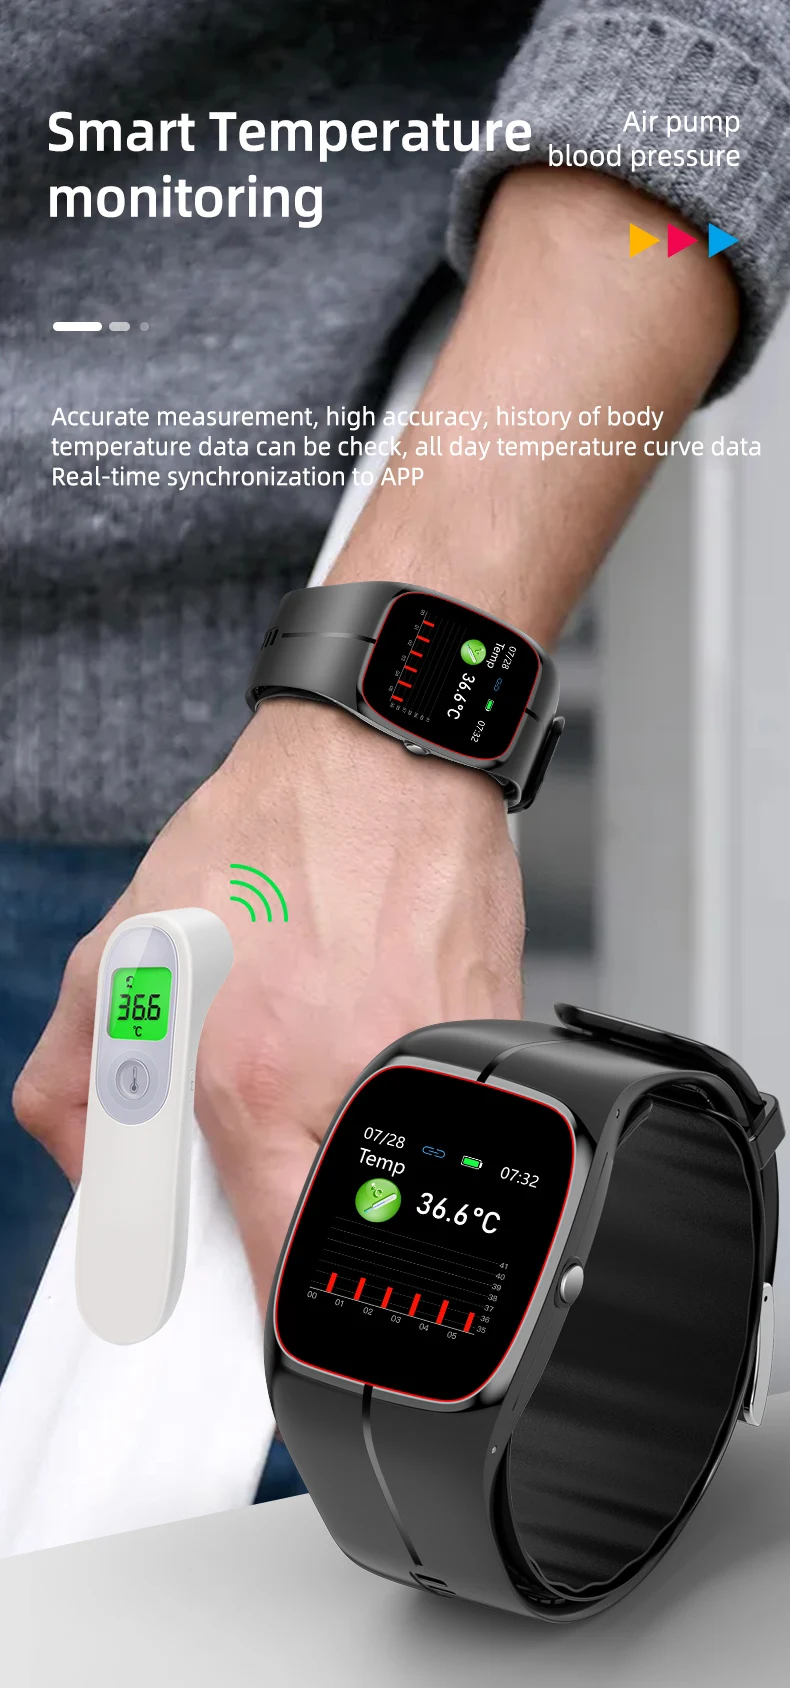 P20 Smart Watch Air Pump Blood Pressure (10).jpg